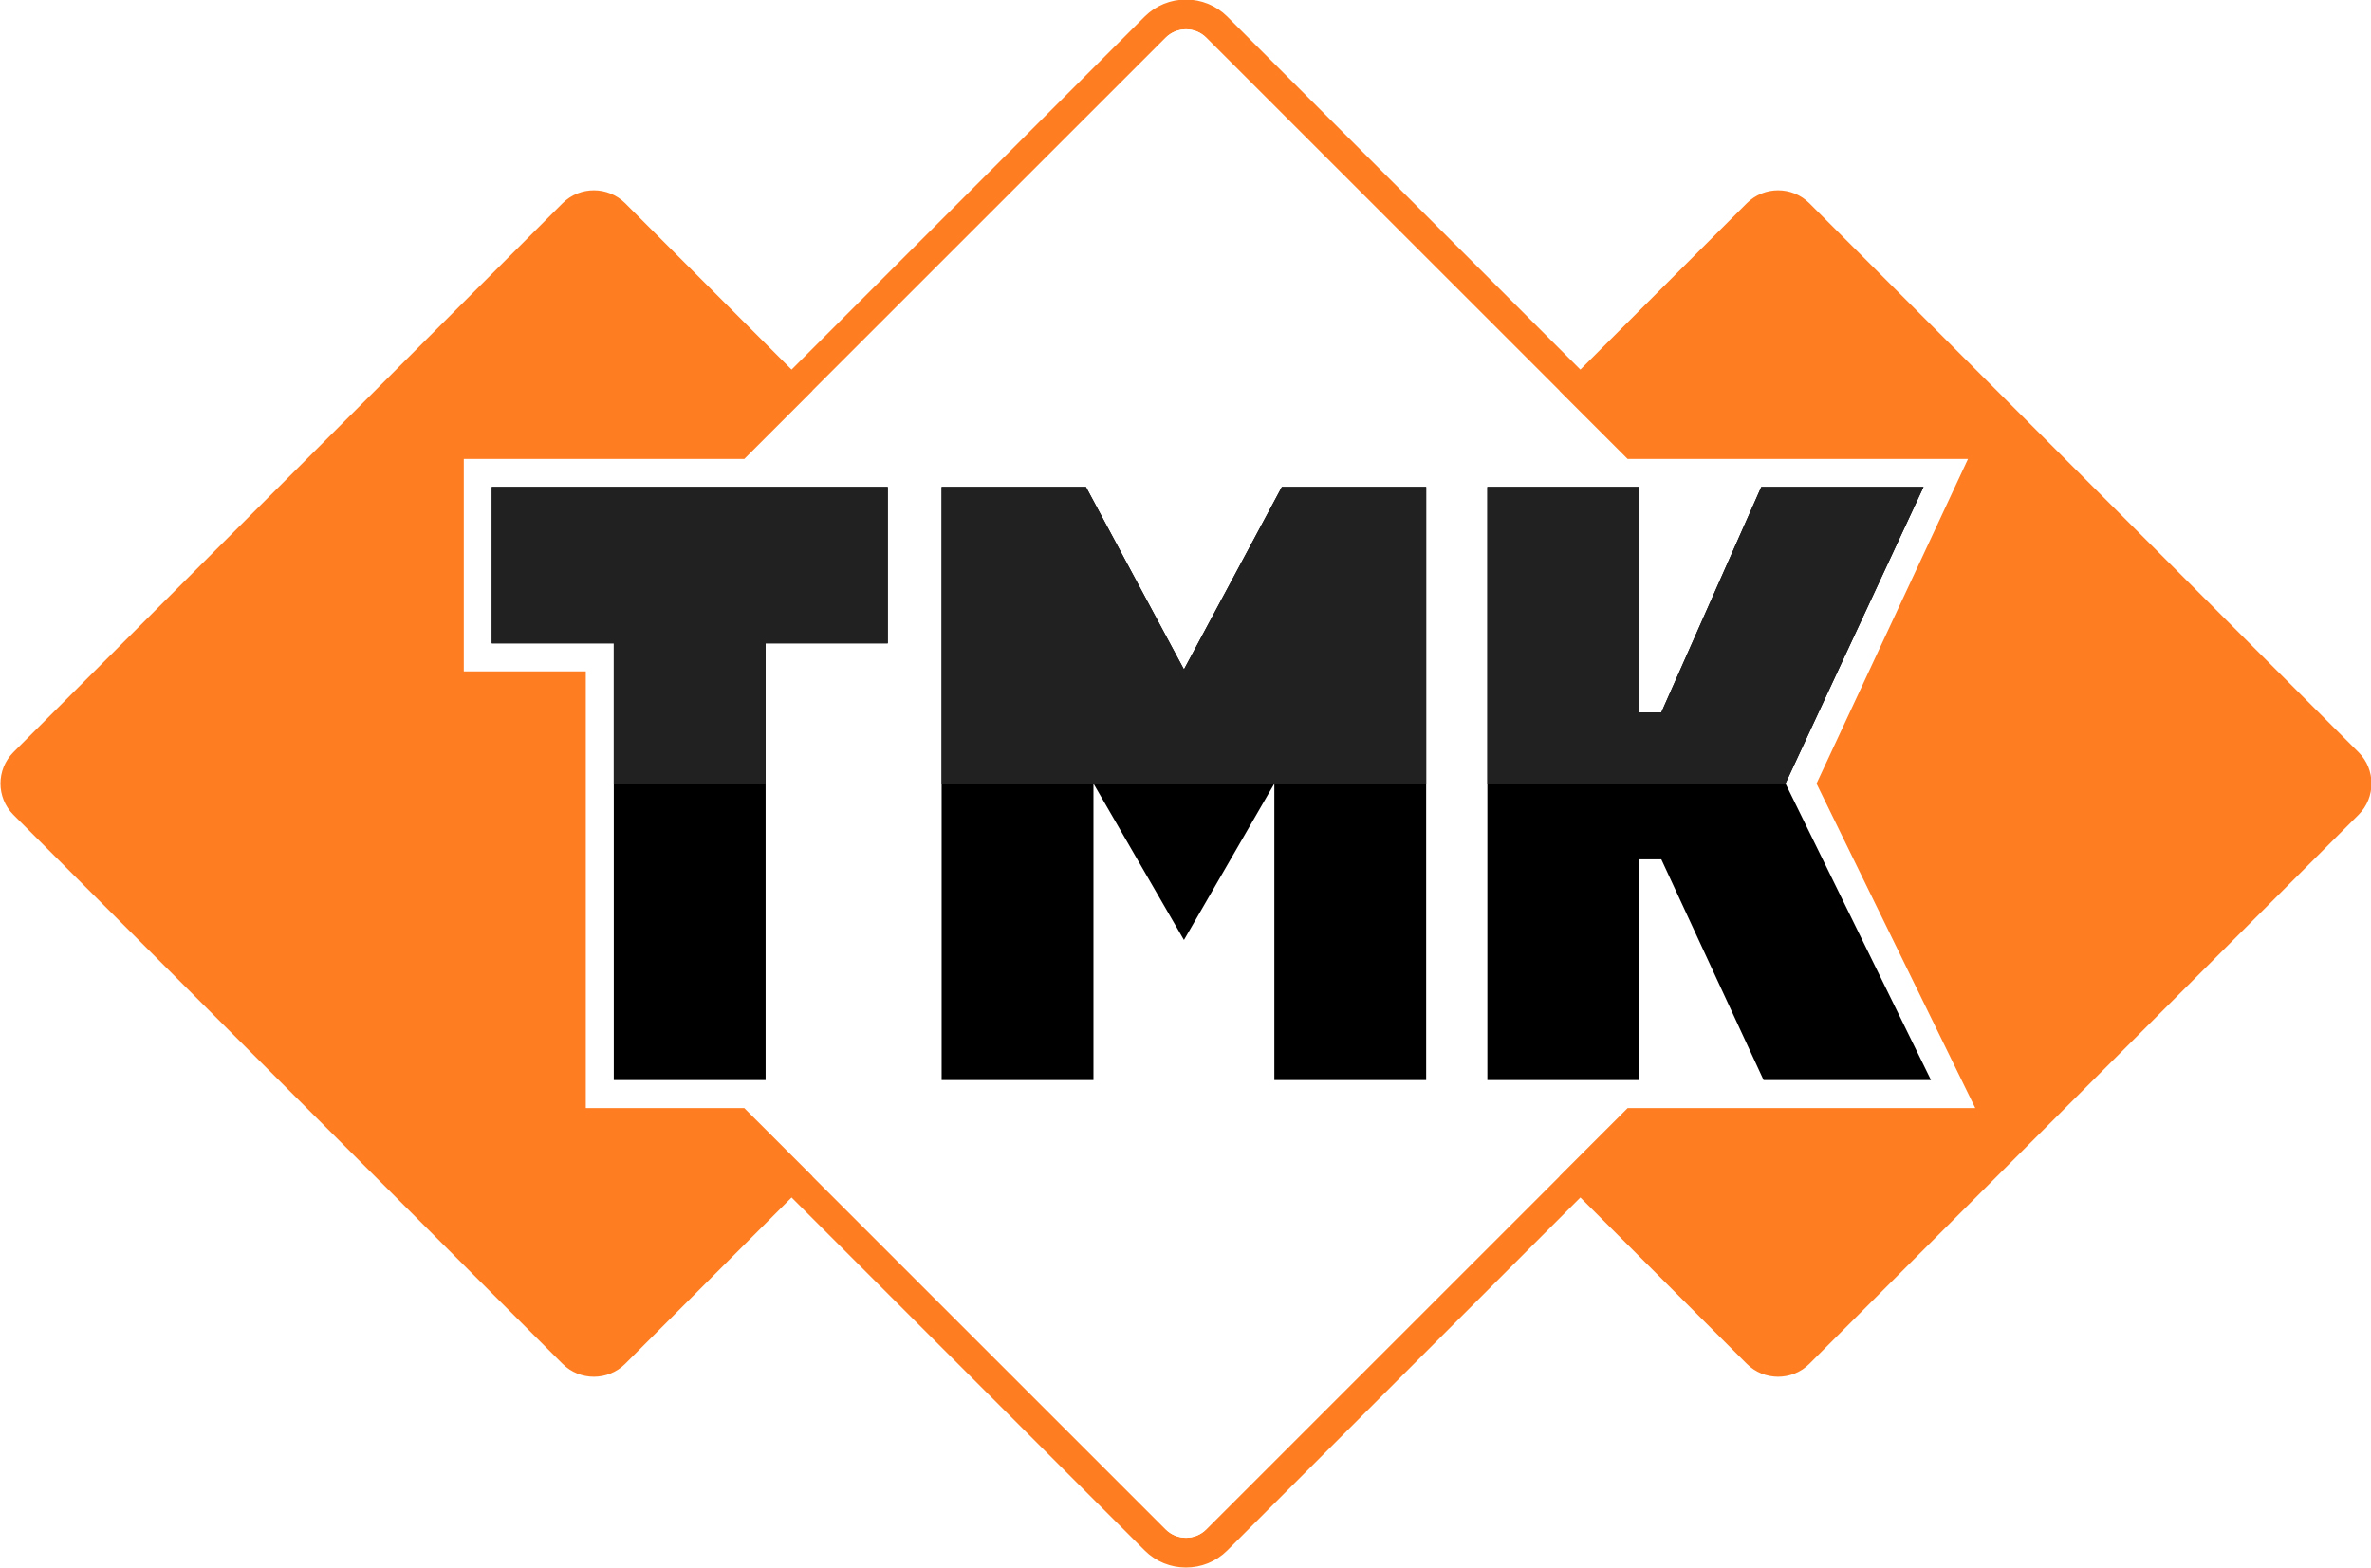 Акция «ТМК» (TRMK) - прогноз и цена в 2021 году